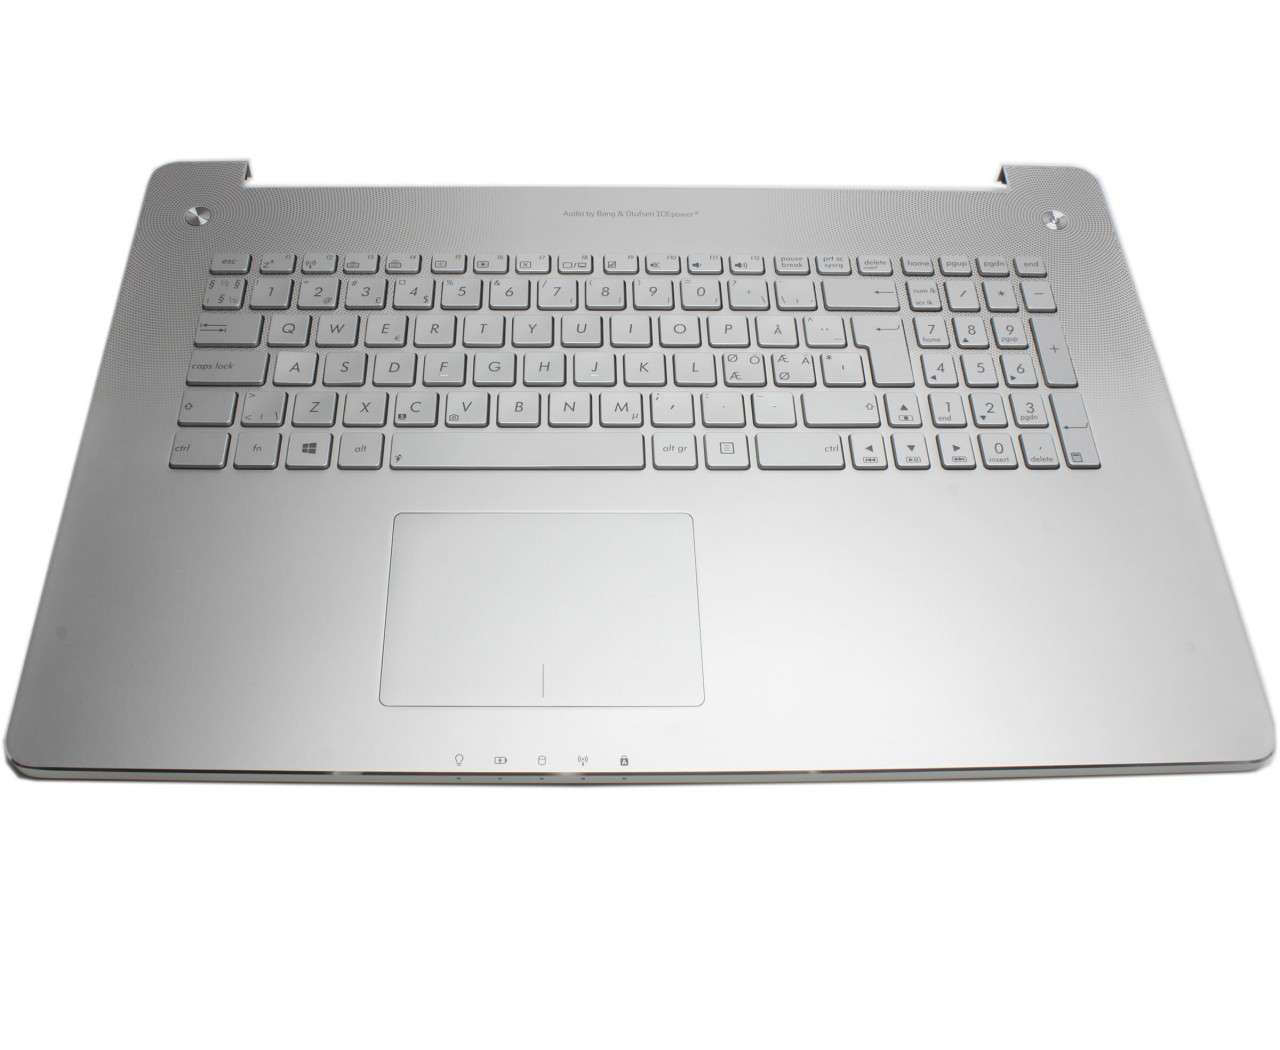 Tastatura Asus 90NB0201 R32US0 argintie cu Palmrest argintiu iluminata backlit 90NB0201